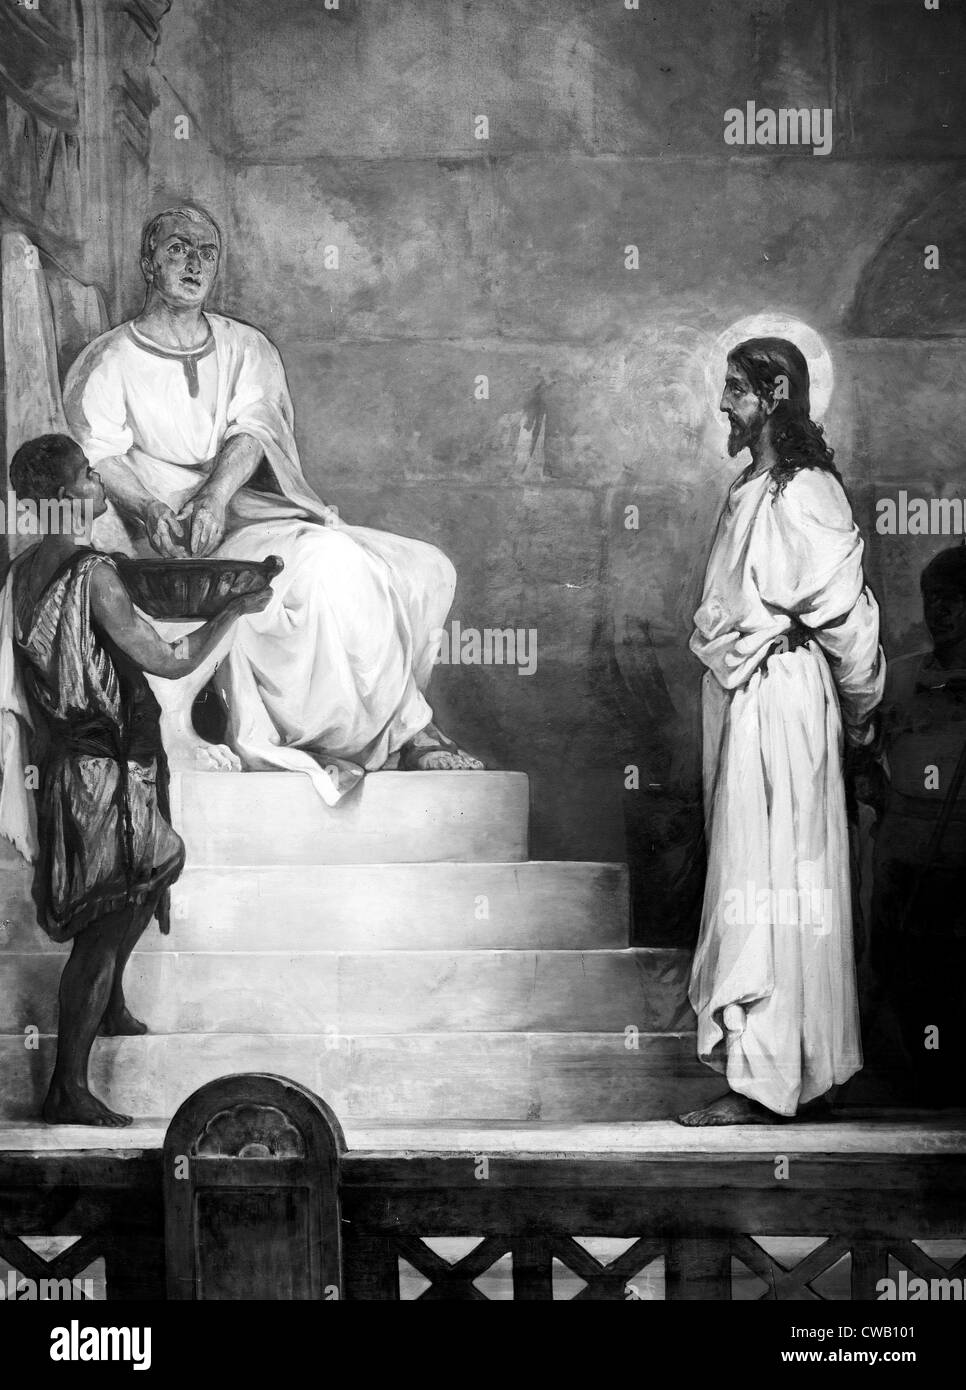 Jesus Christus, Titel: Pontius Pilate seine Händewaschen, von Christi Passion Reihe von Gemälden von Kosheleff, ca. 1900. Stockfoto